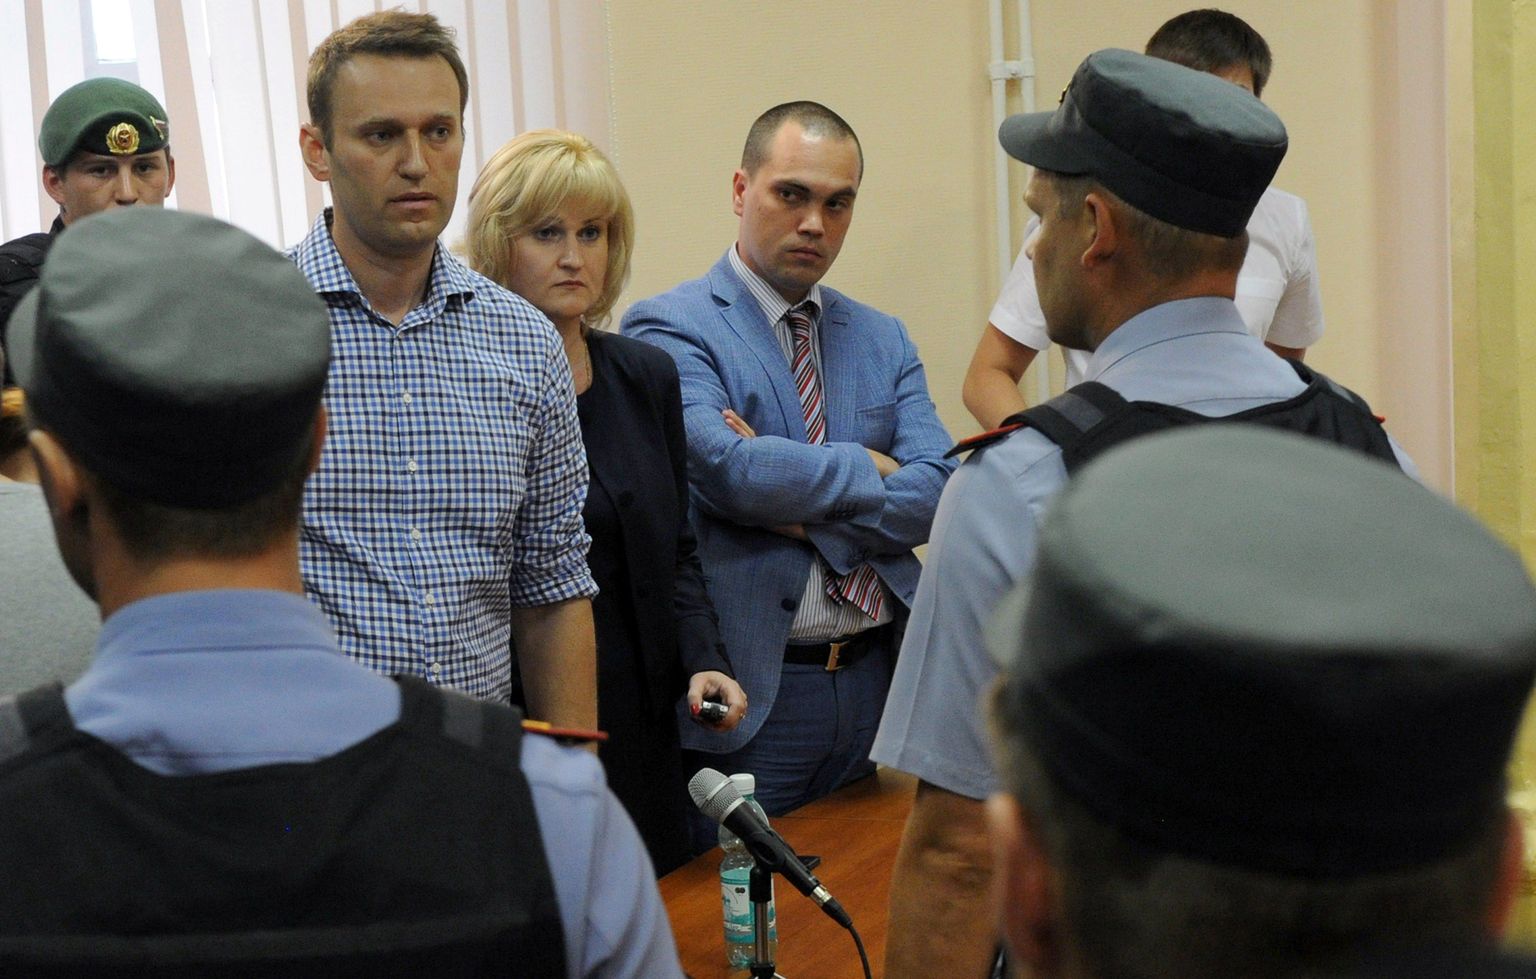 Рынок акций РФ днем в четверг начал падать после решения суда Кирова в отношении Алексея Навального, приговорившего его к пяти годам лишения свободы.